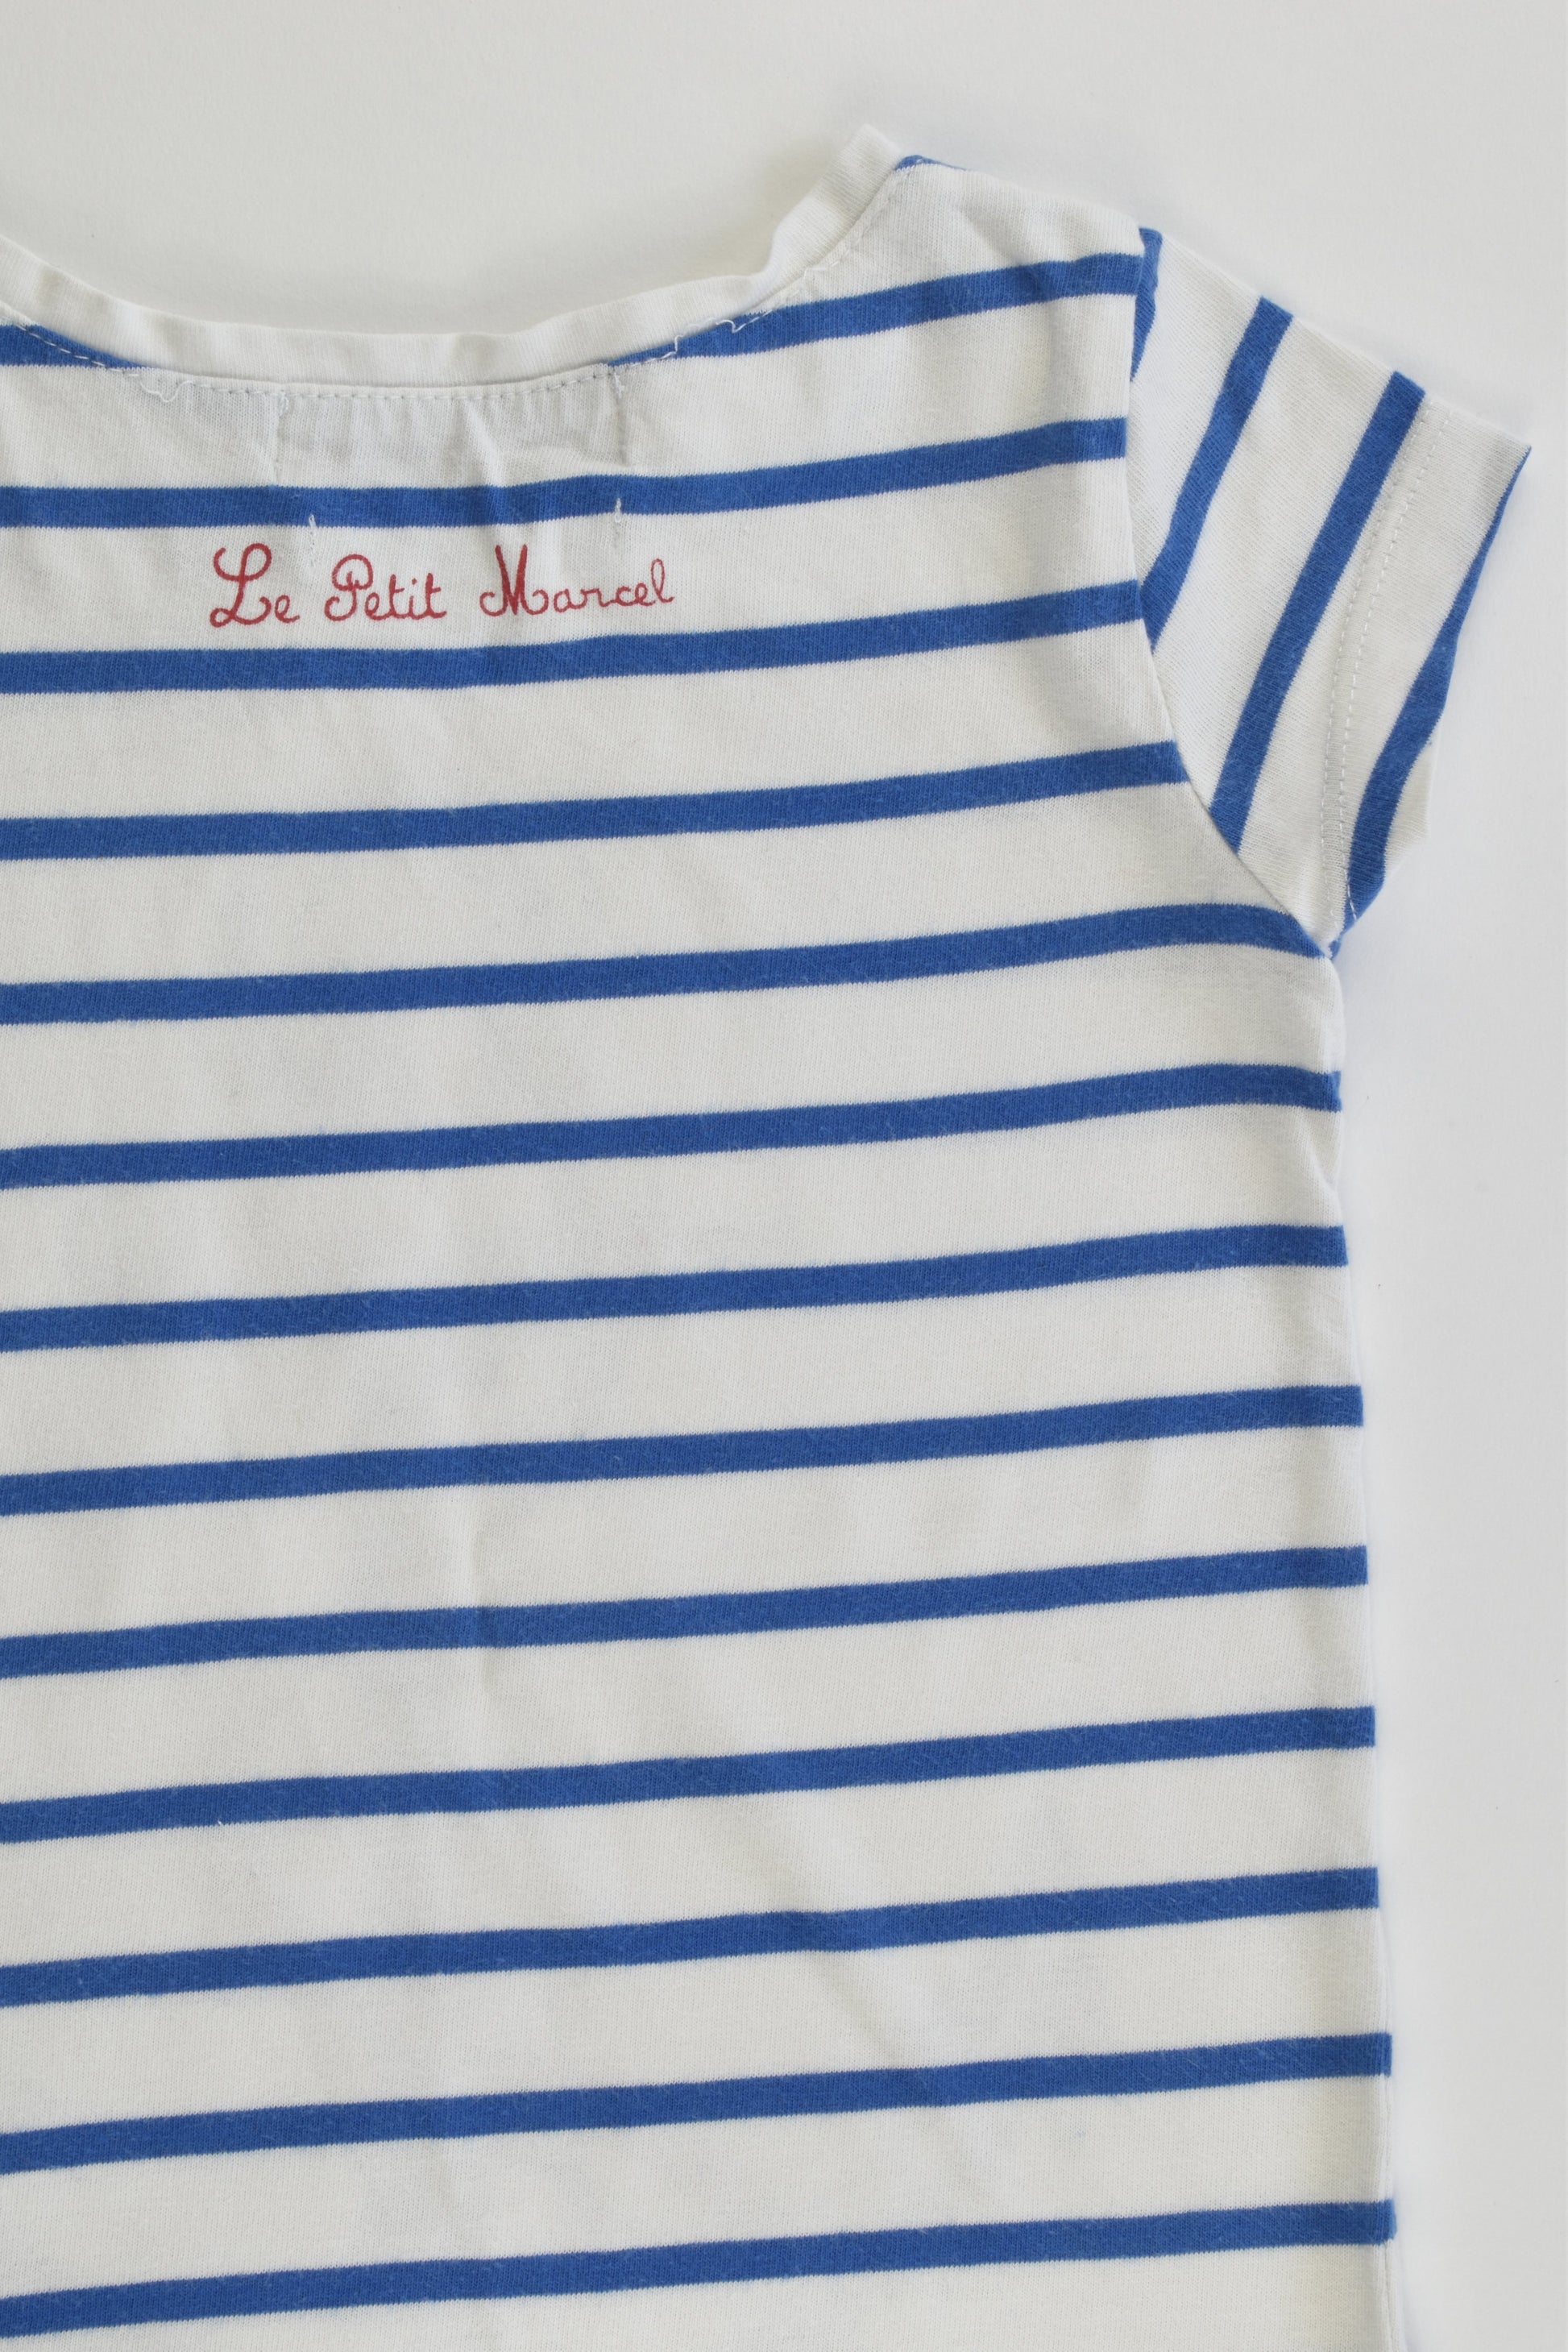 Le Petit Marcel (France) Size 4 (104 cm) Anchor T-shirt